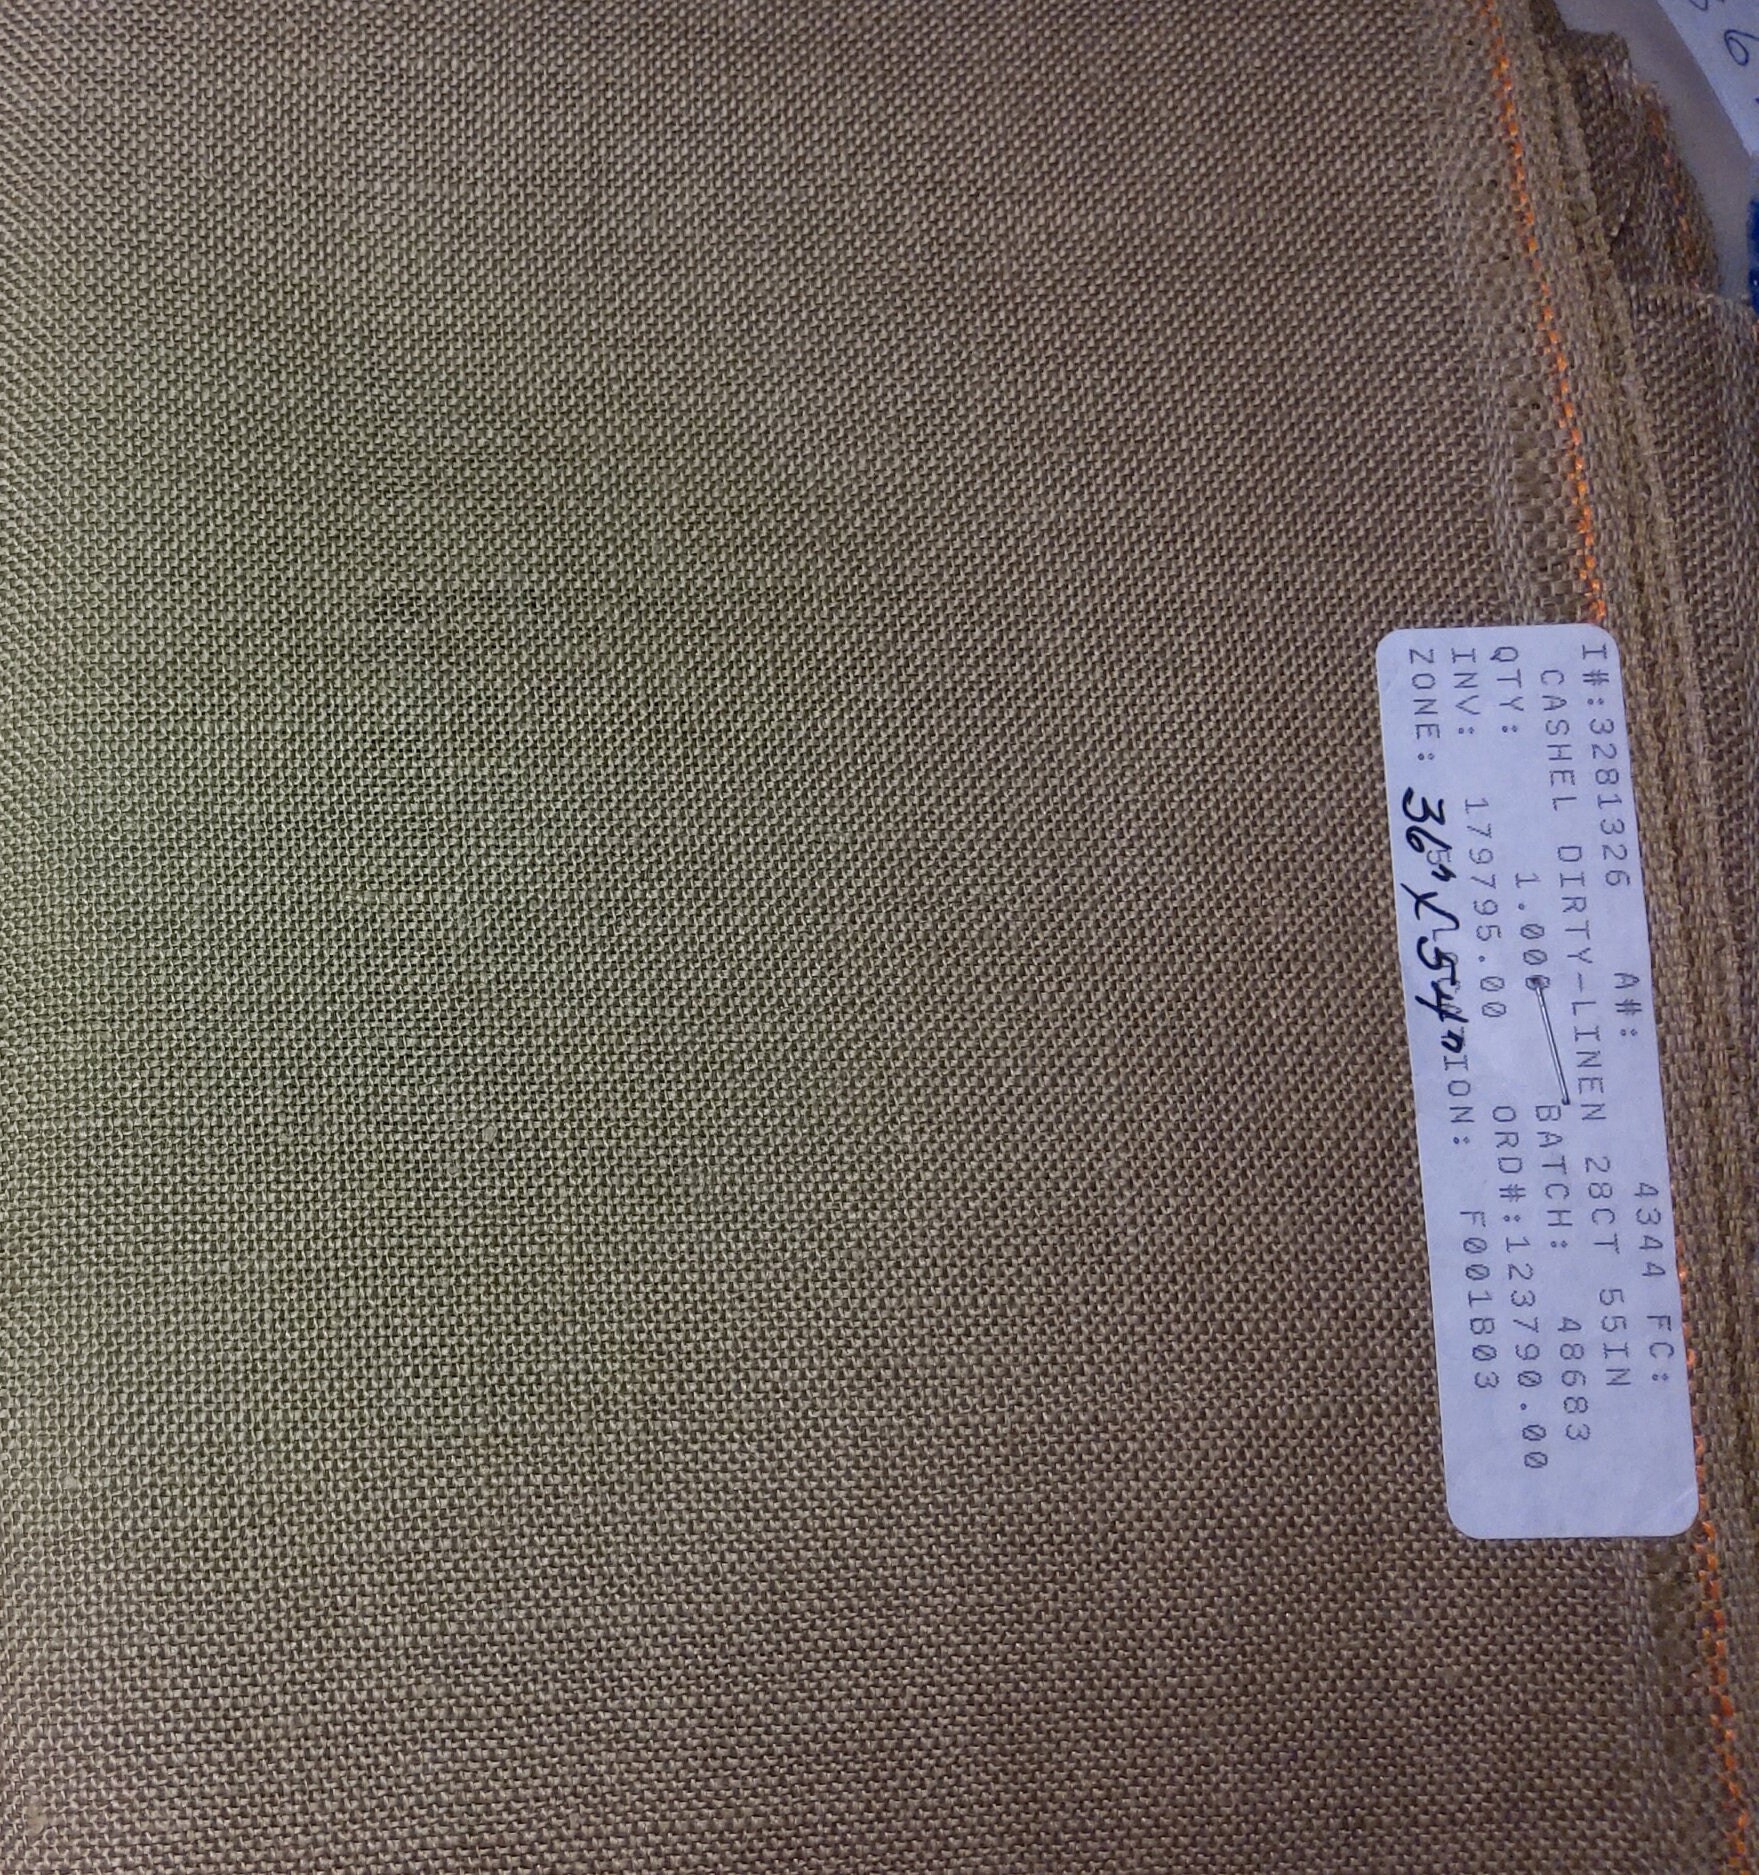 Zweigart 28 Count Dirty Linen Cashel Fabric 18x27